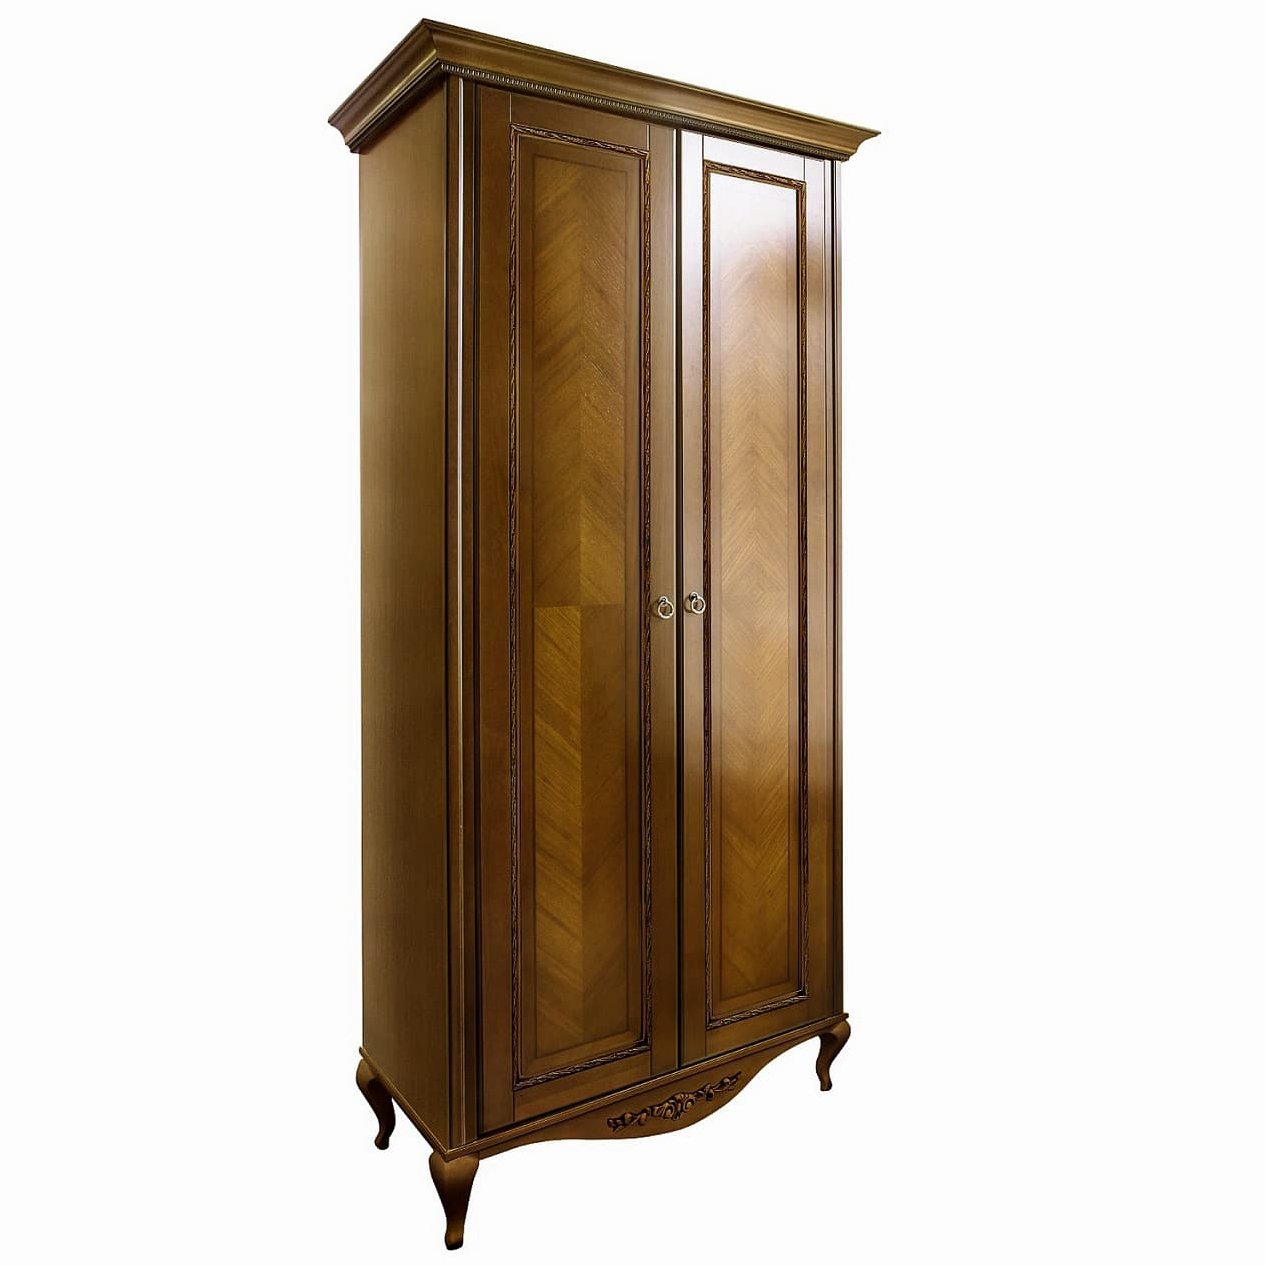 Шкаф платяной Timber Неаполь, 2-х дверный 114x65x227 см цвет: орех (T-522)T-522